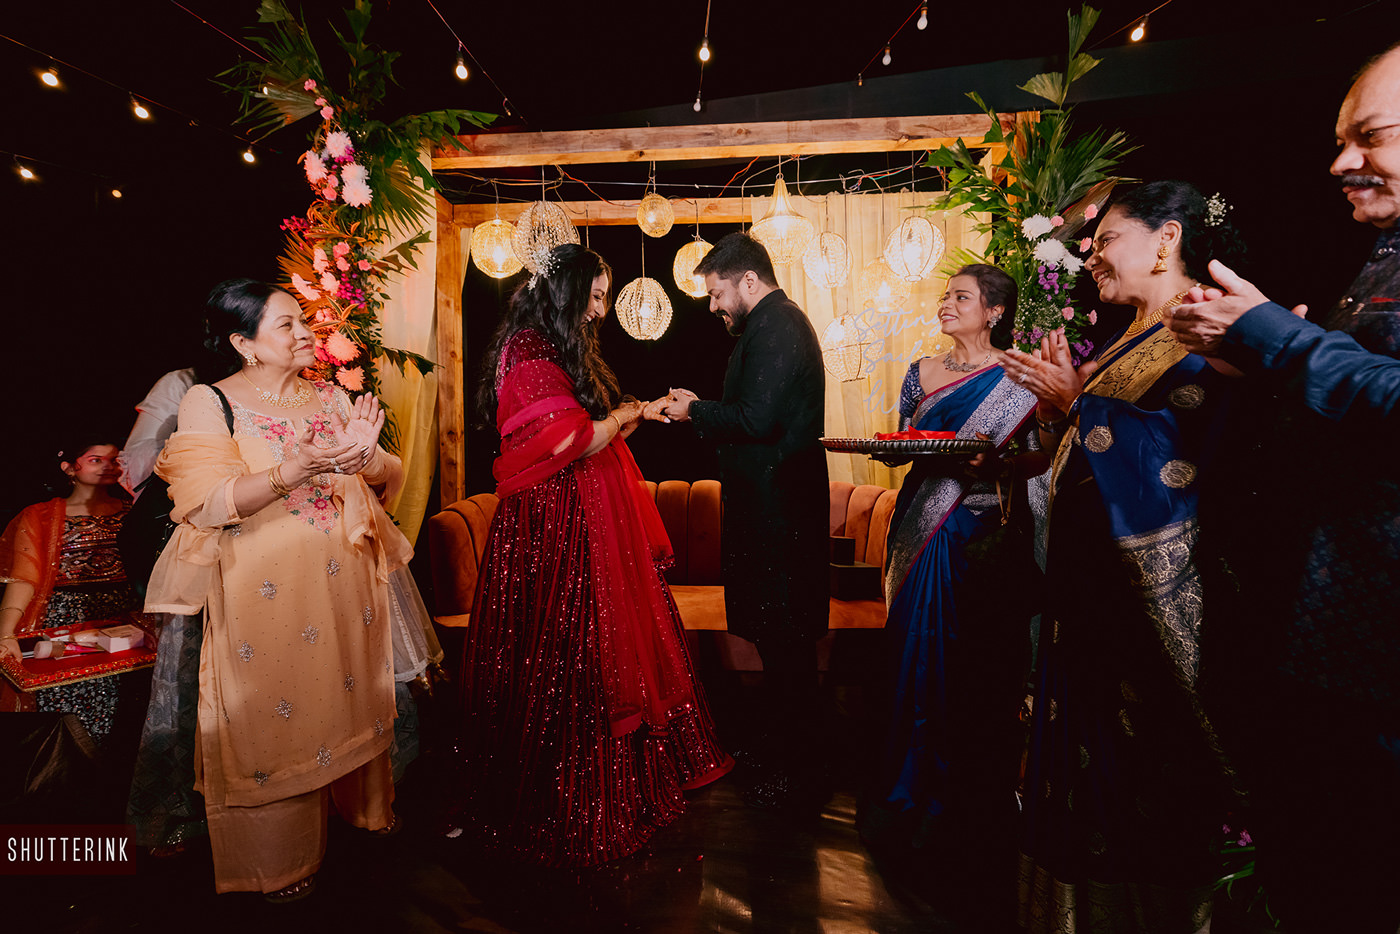 sikh wedding in gujarat